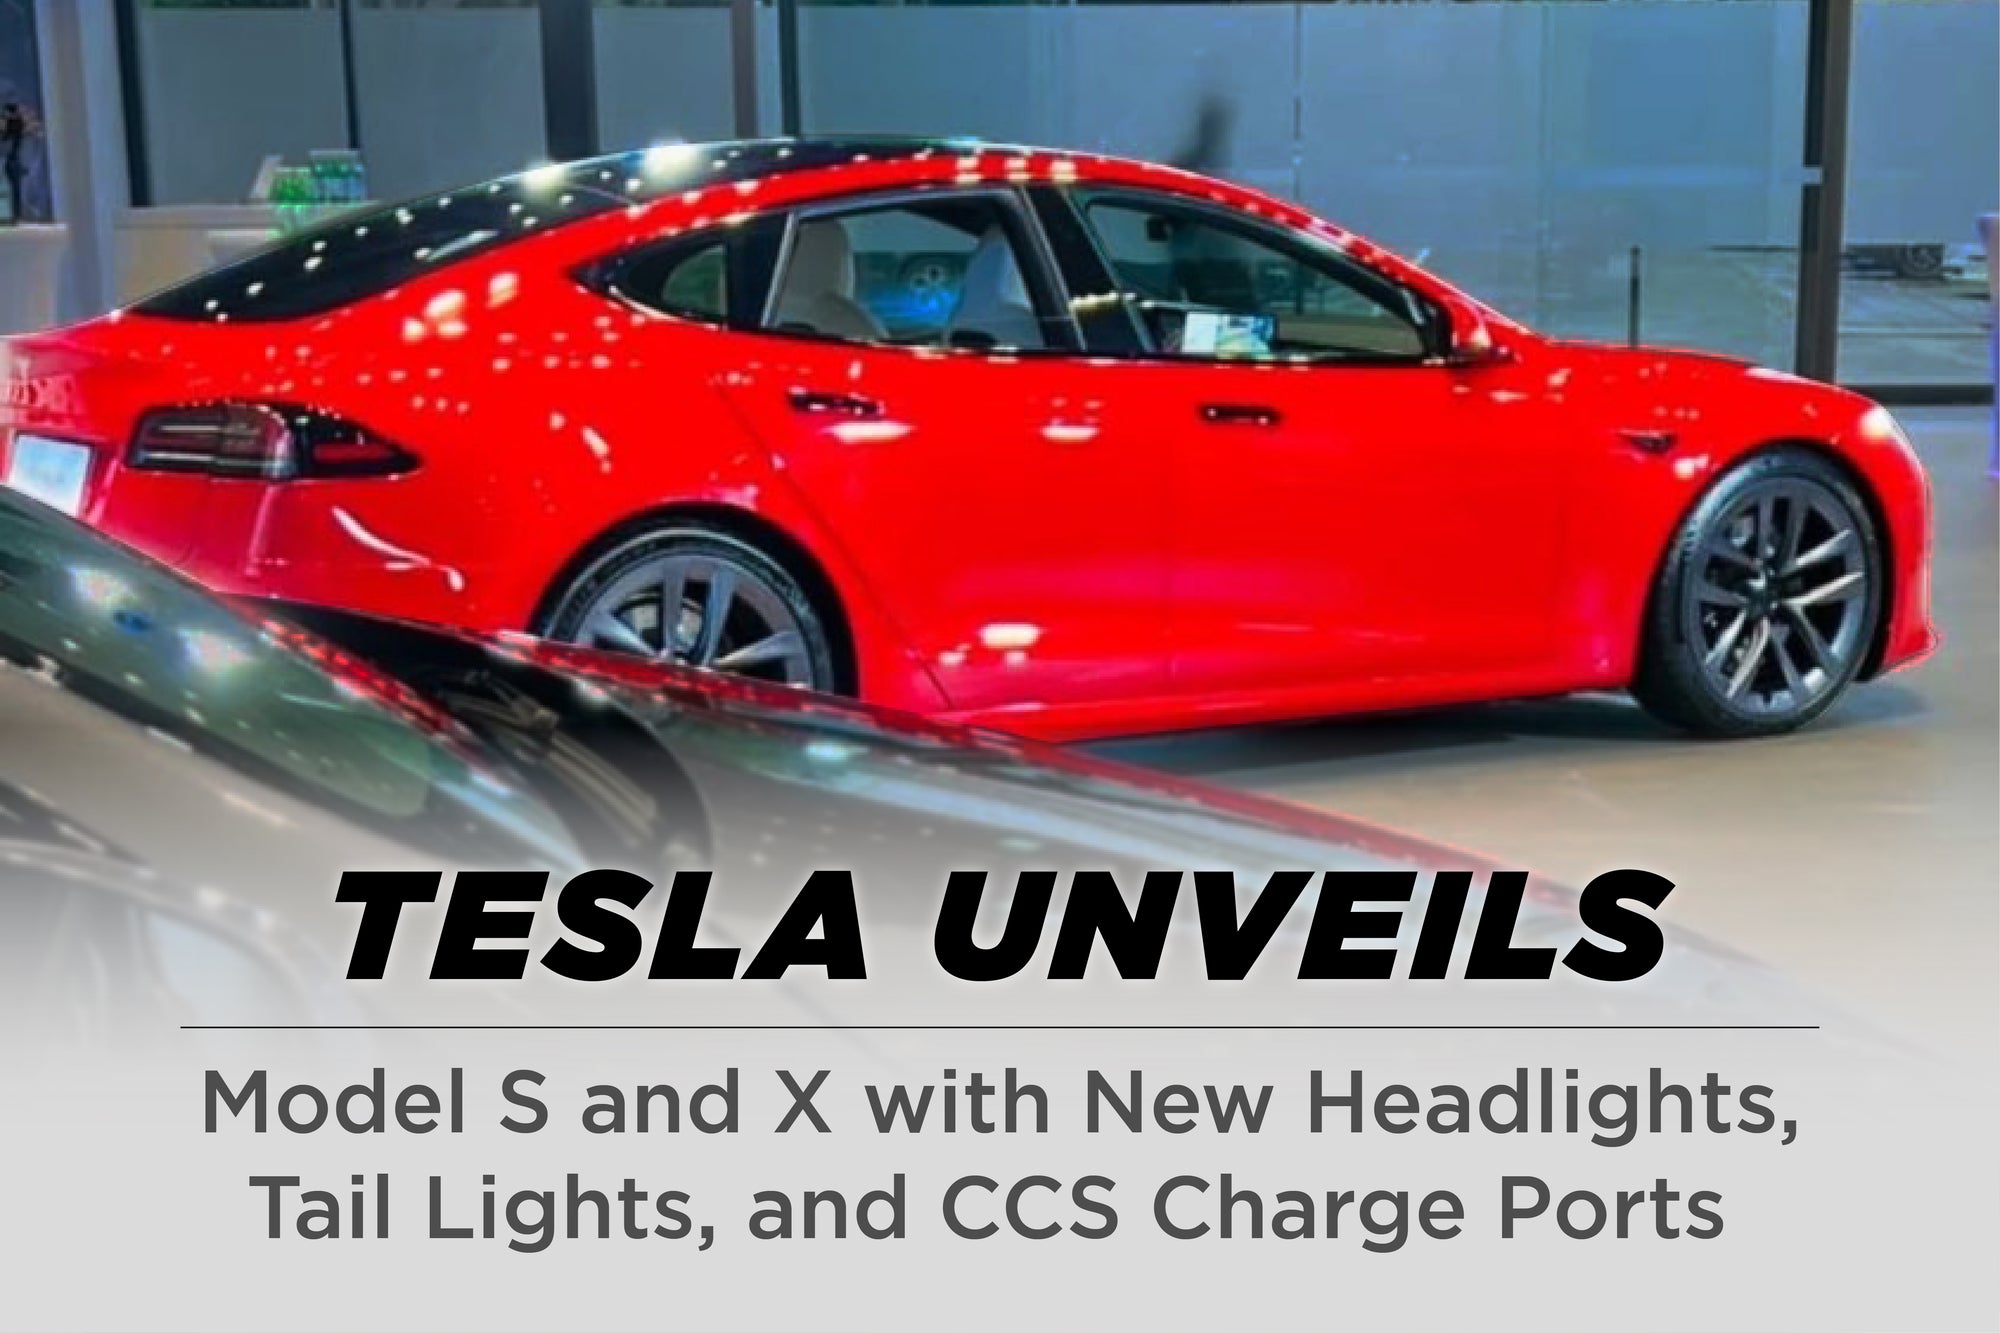 Tesla Unveils New Model S & X Update